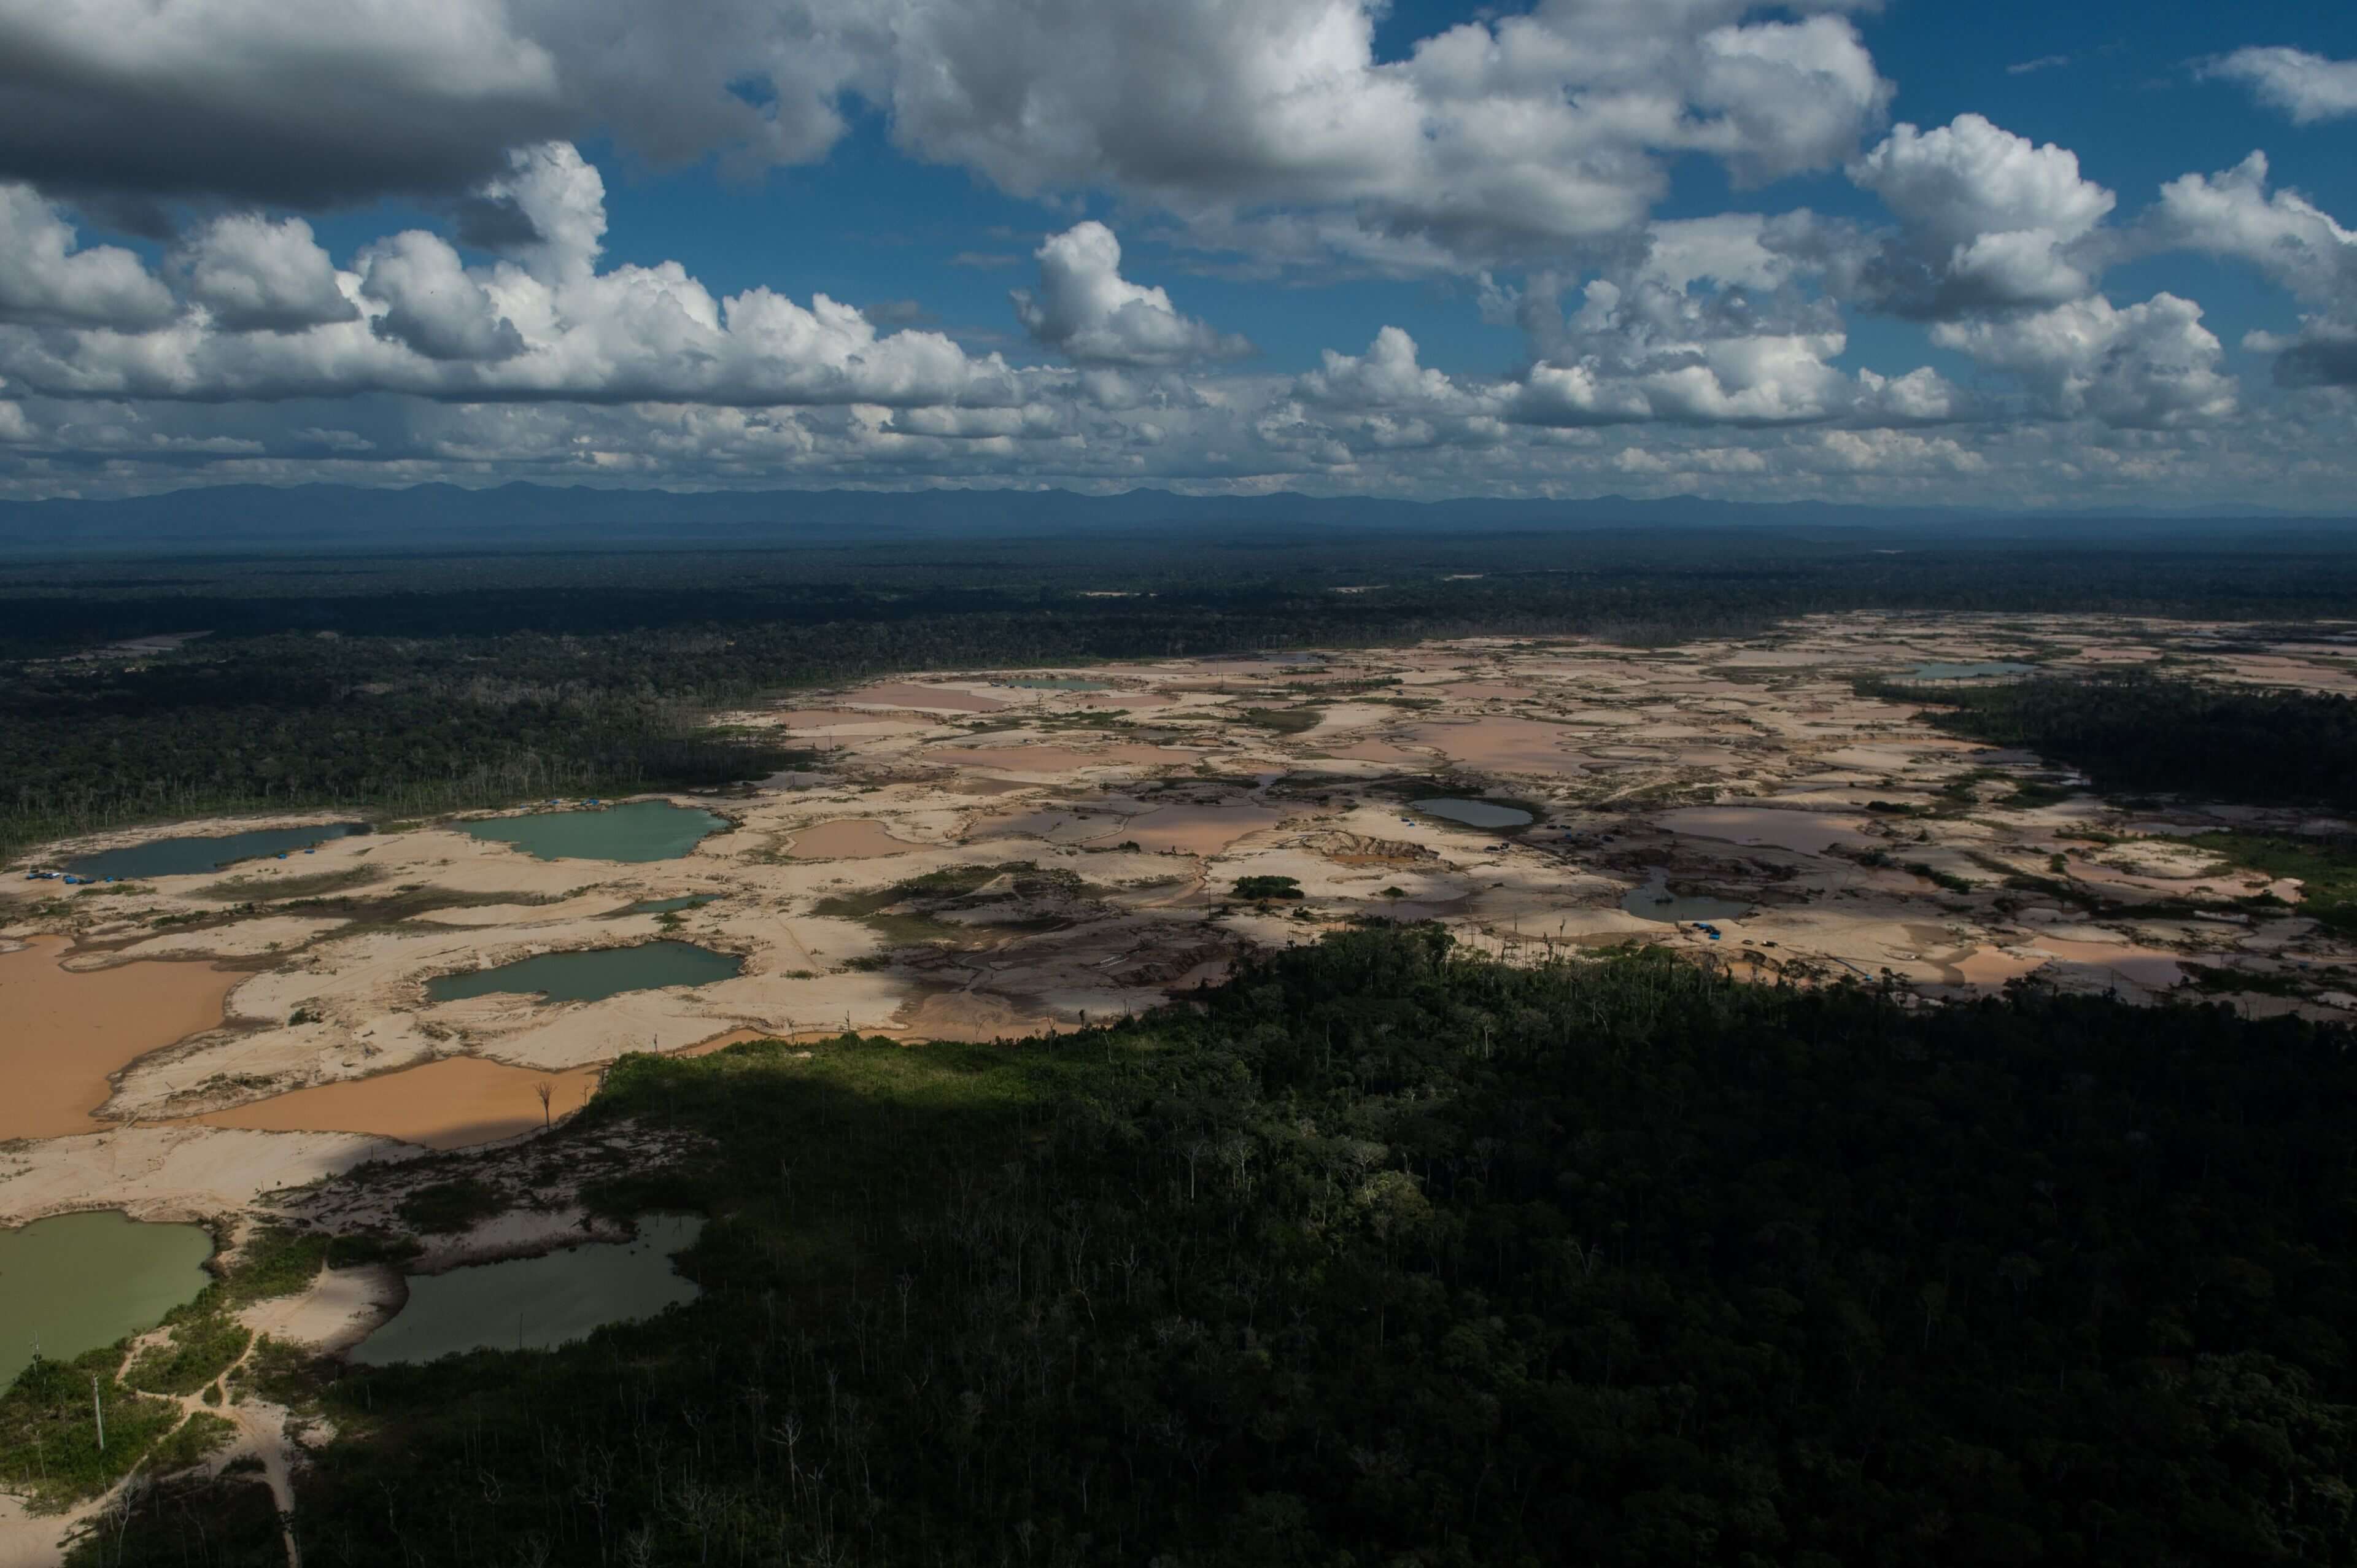 Vista aerea del enclave minero de La Pampa, en Peru